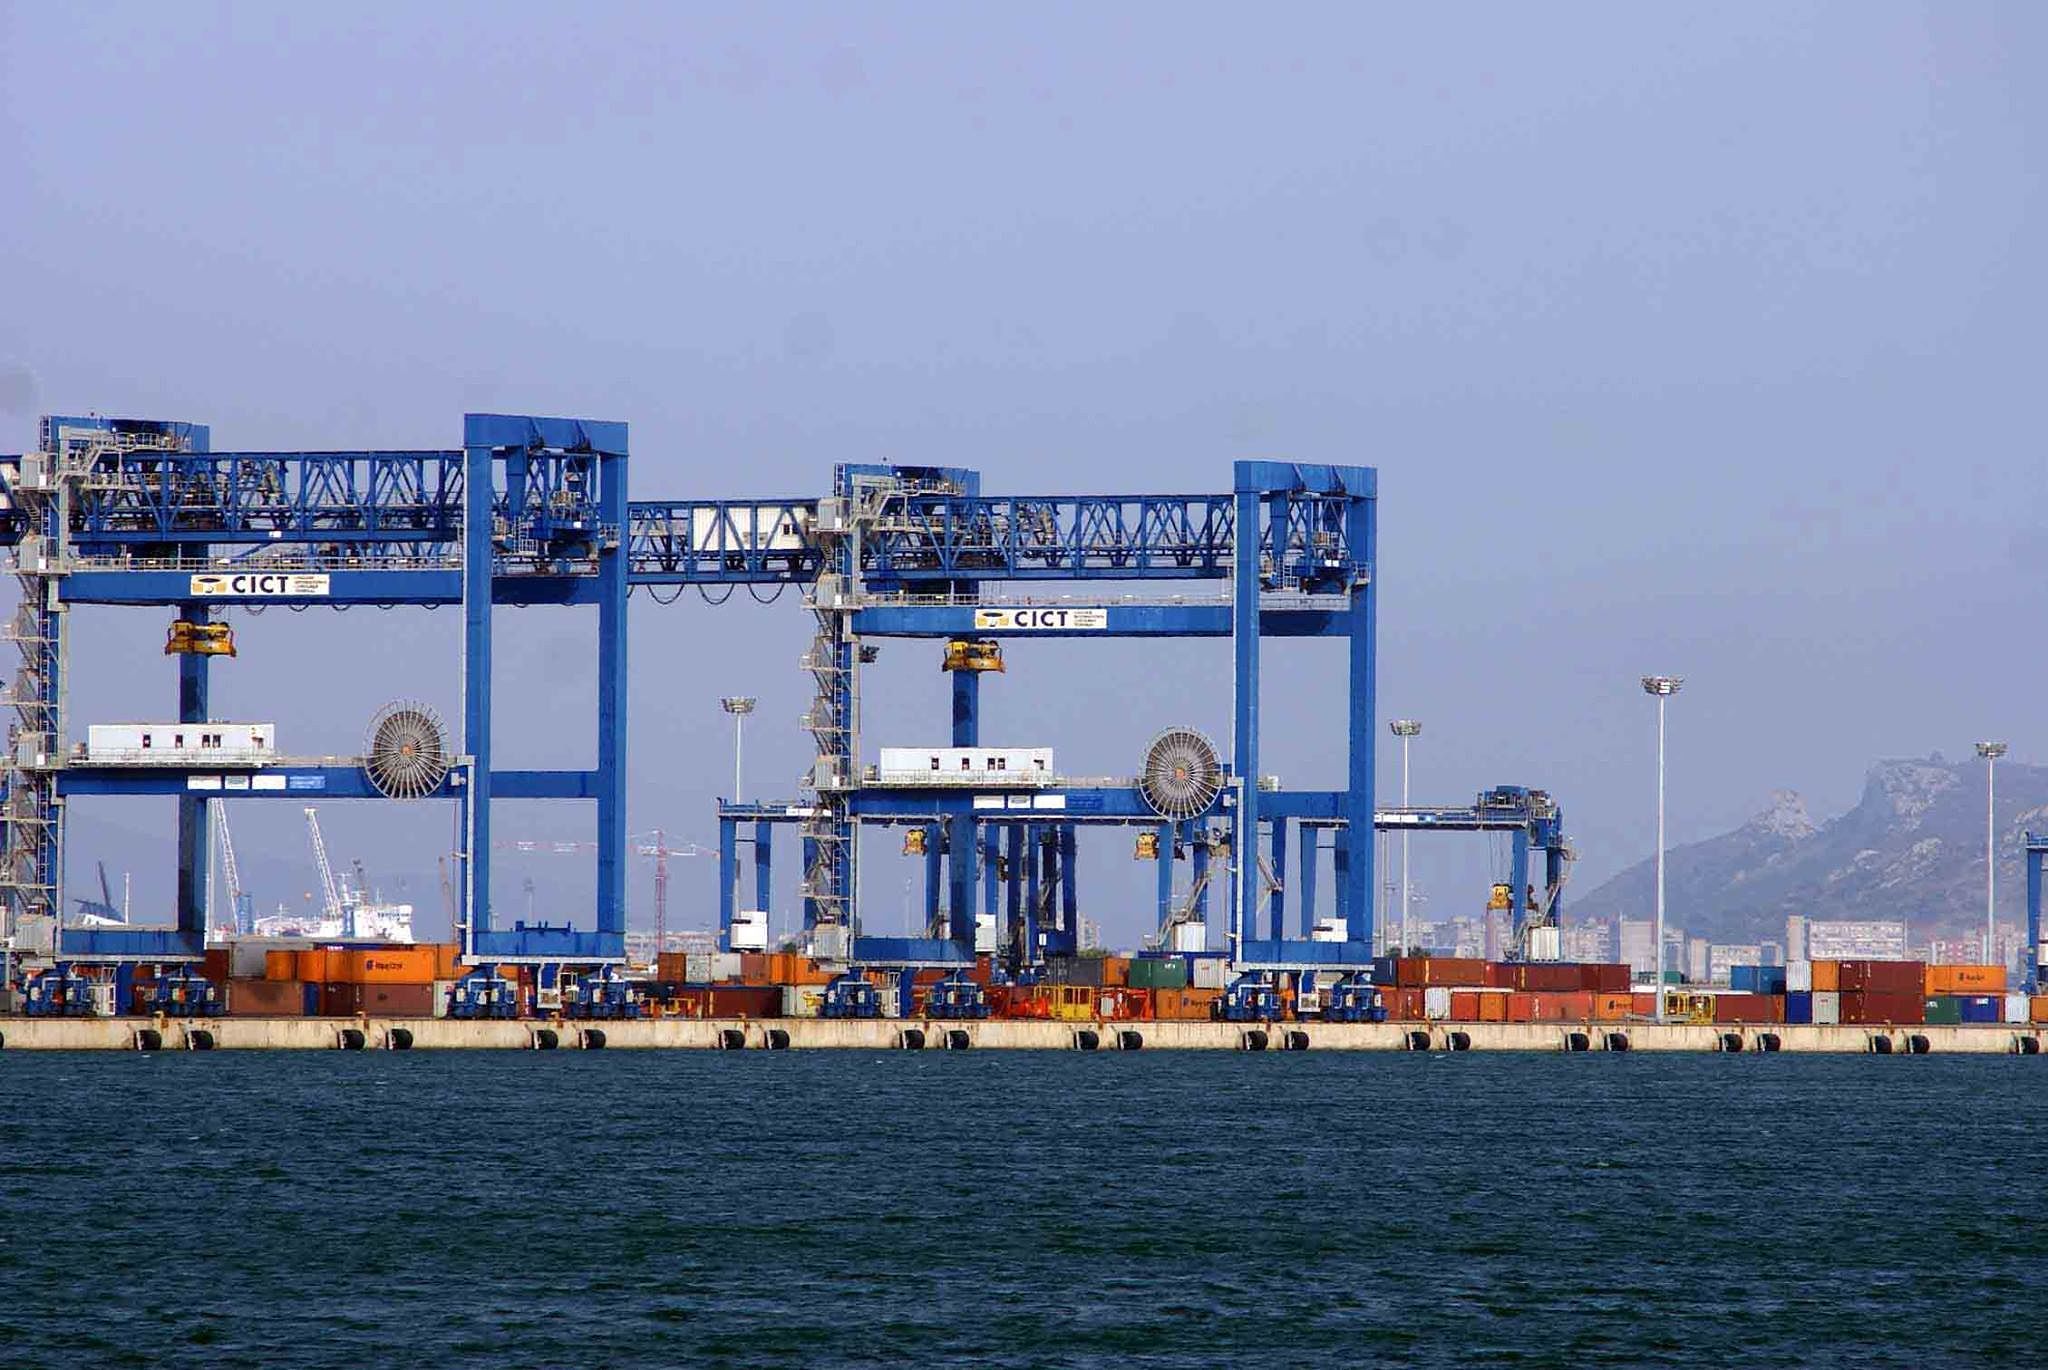 Crisi del porto di Cagliari, Rixi: "Mettere in sicurezza i lavoratori"